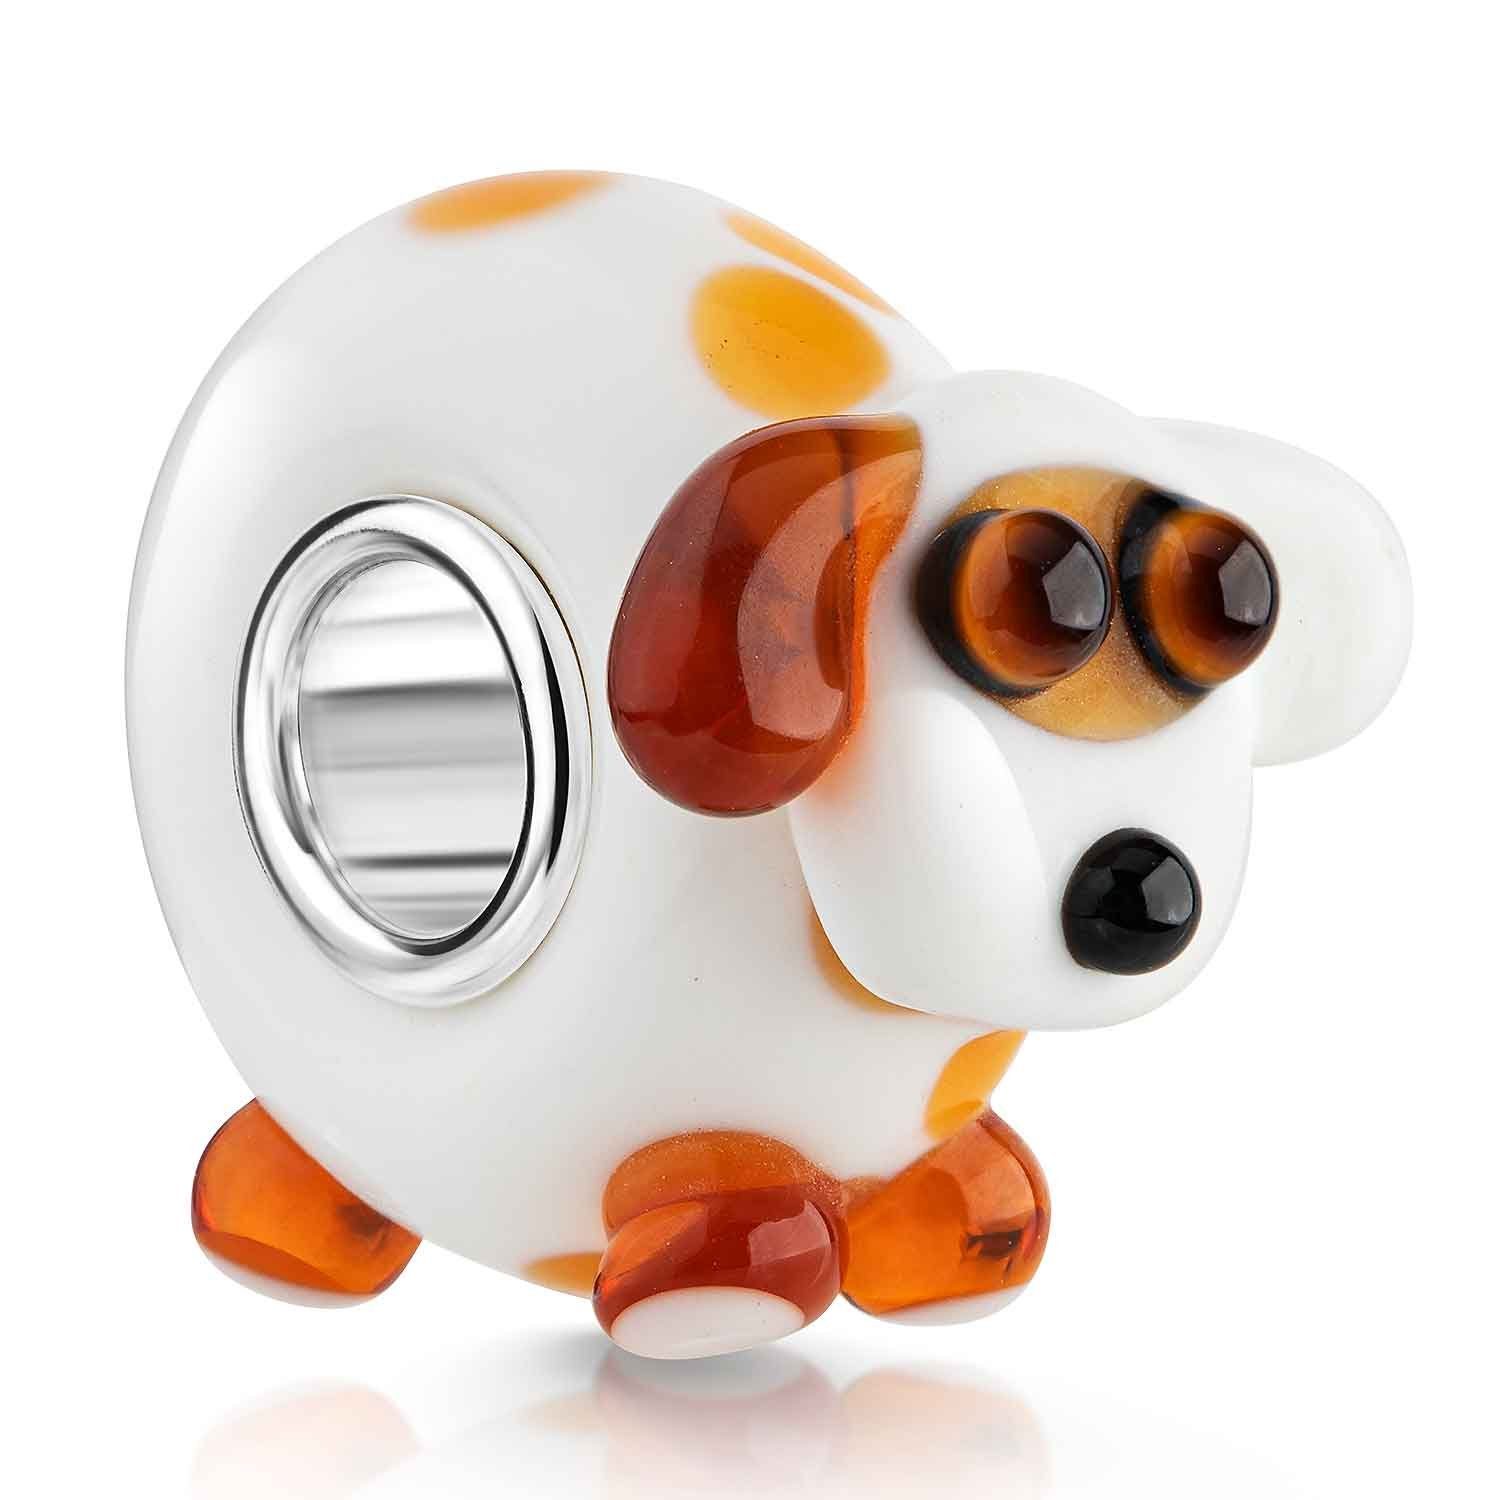 Materia Bead Hund Welpe Glasperle 3D Design Weiß Braun 1019, Kern aus 925 Sterling Silber